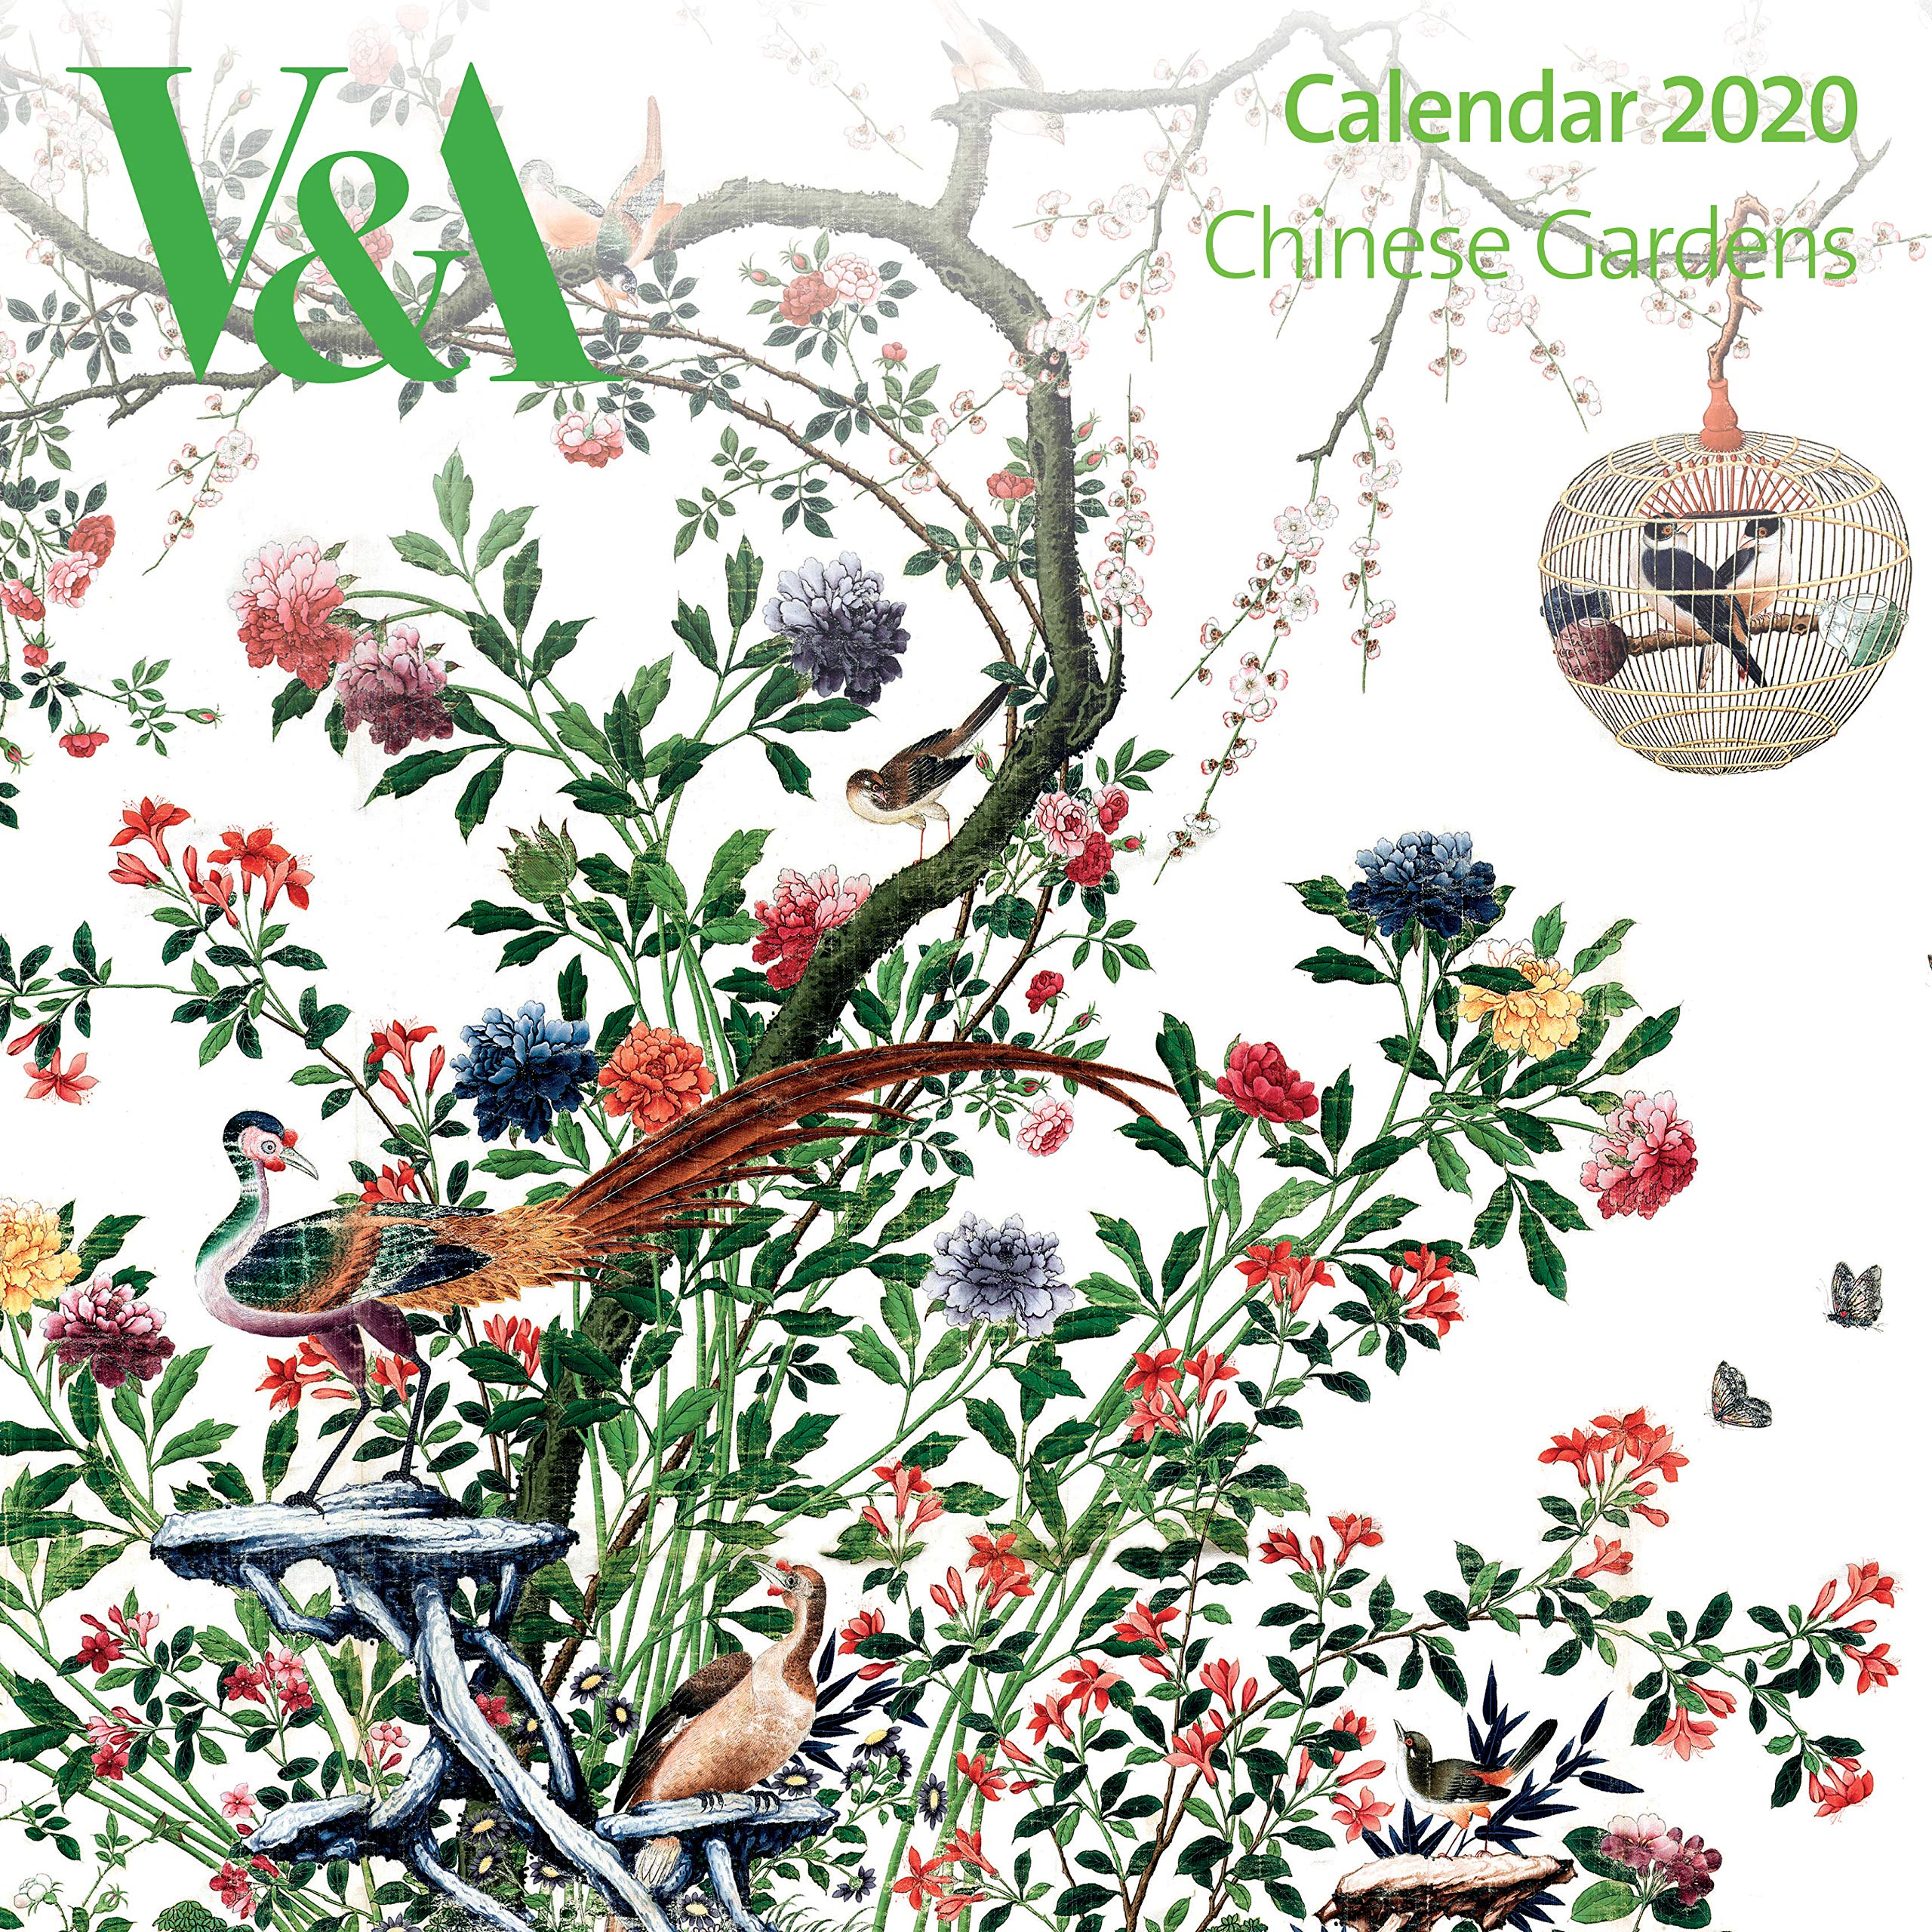 V&A Gardens Wall Calendar 2020 (Art Calendar): Flame Tree